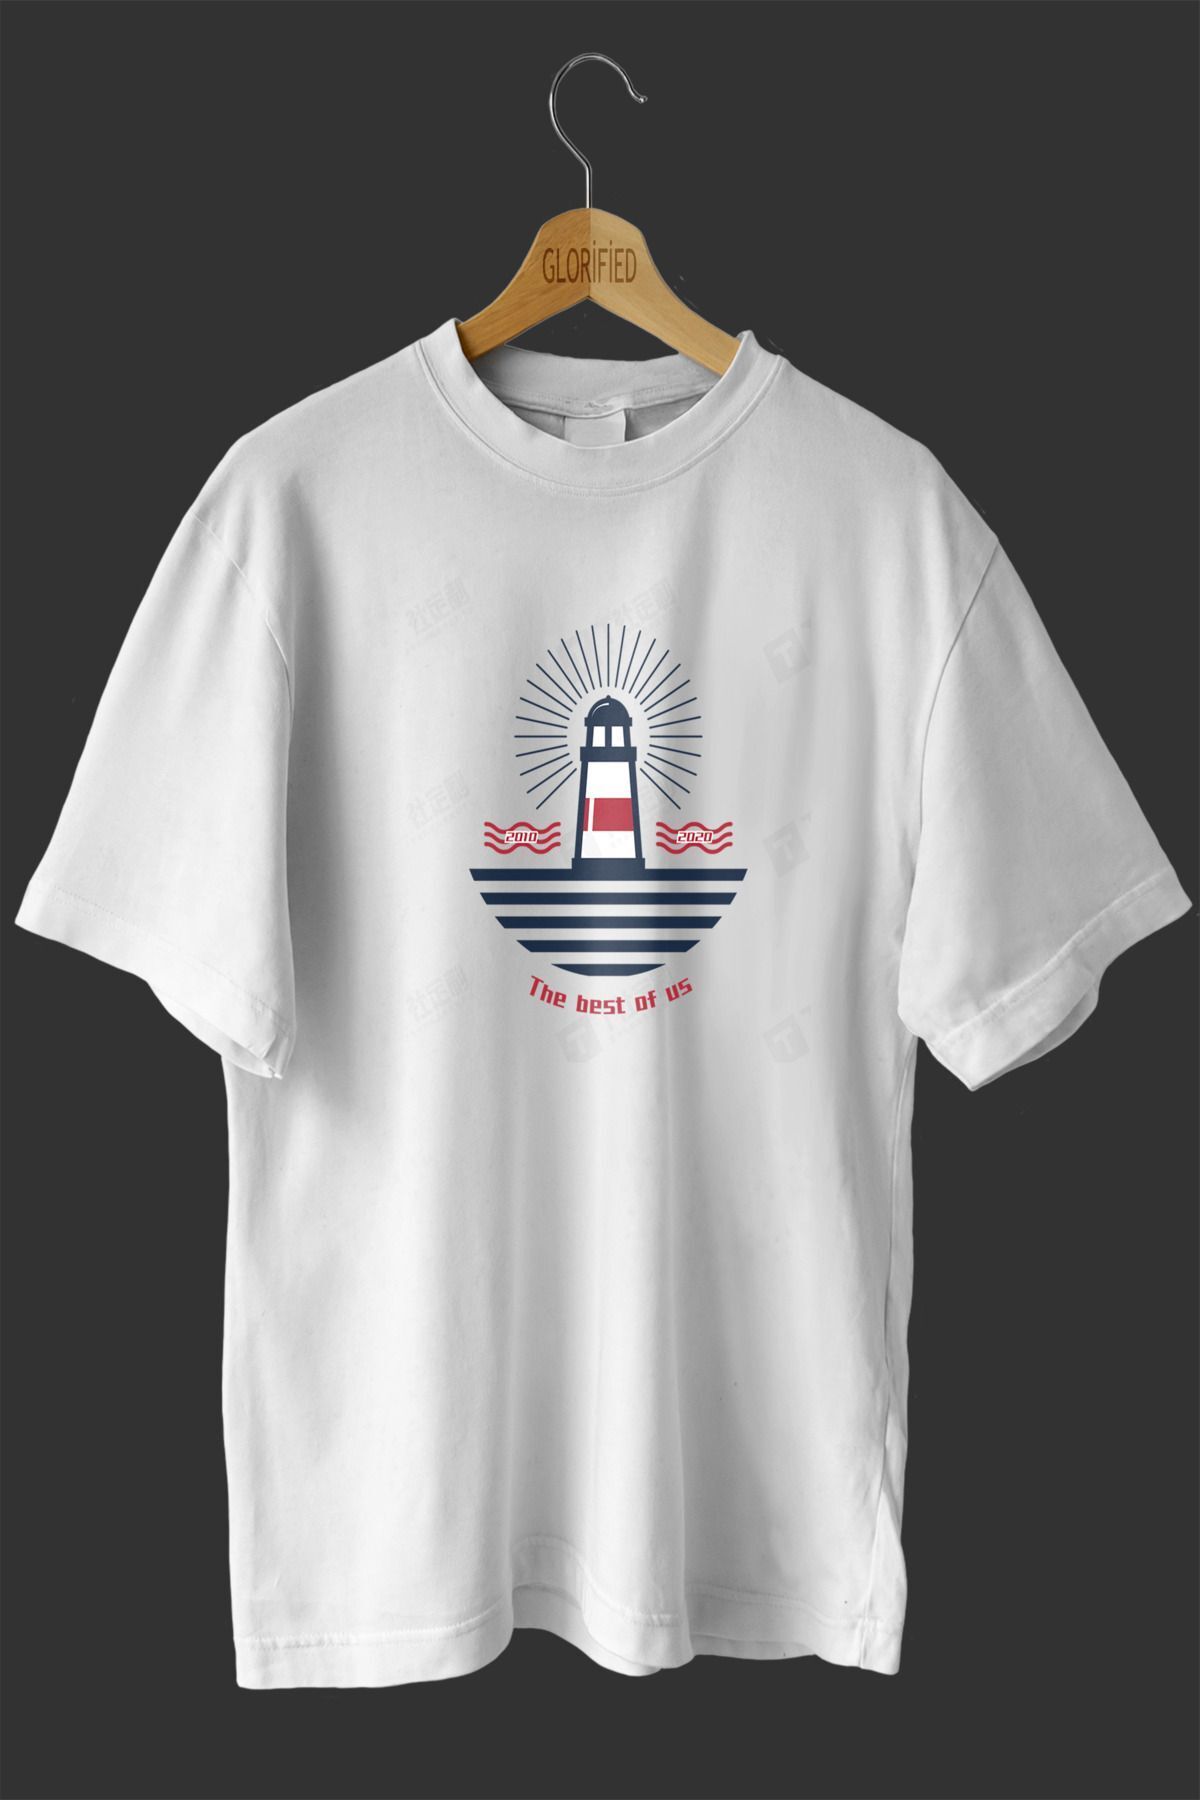 CB MAN COLLECTİON Deniz Feneri Tasarım Baskılı Oversize T-shirt ( Tişört )